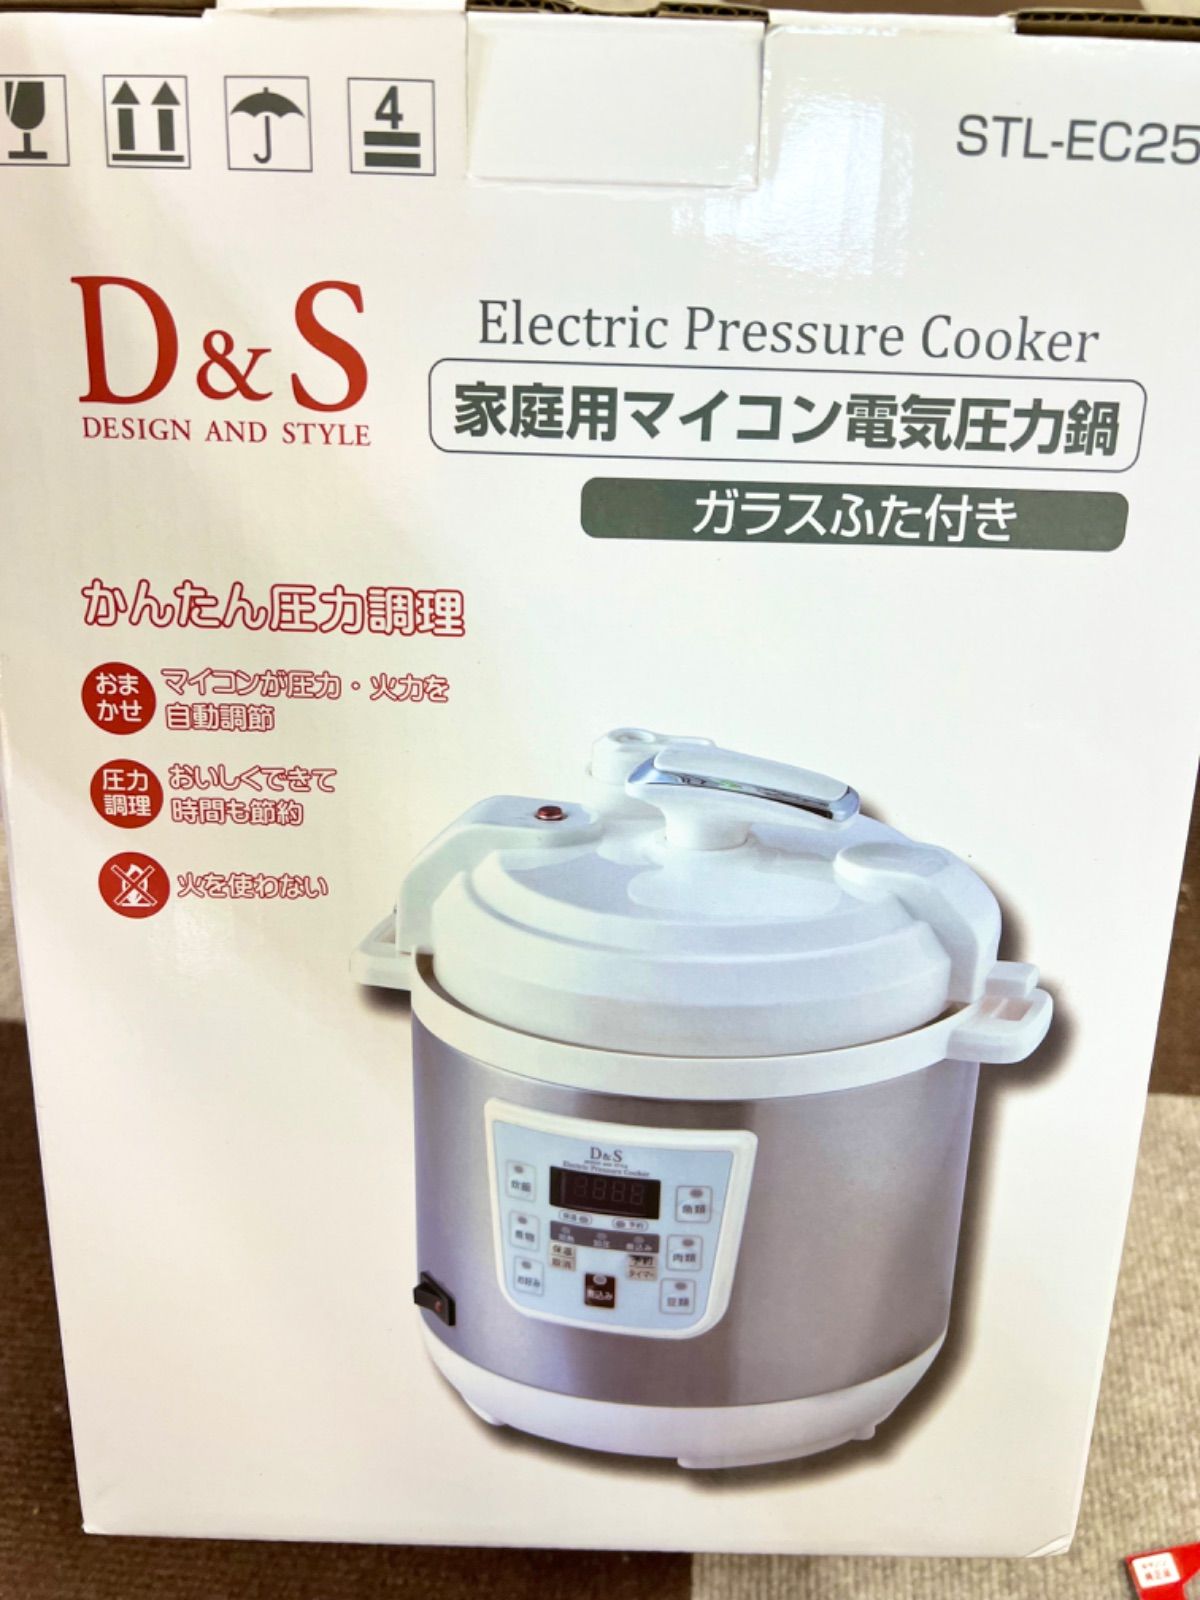 D&S 家庭用マイコン電気圧力鍋 STL-EC25